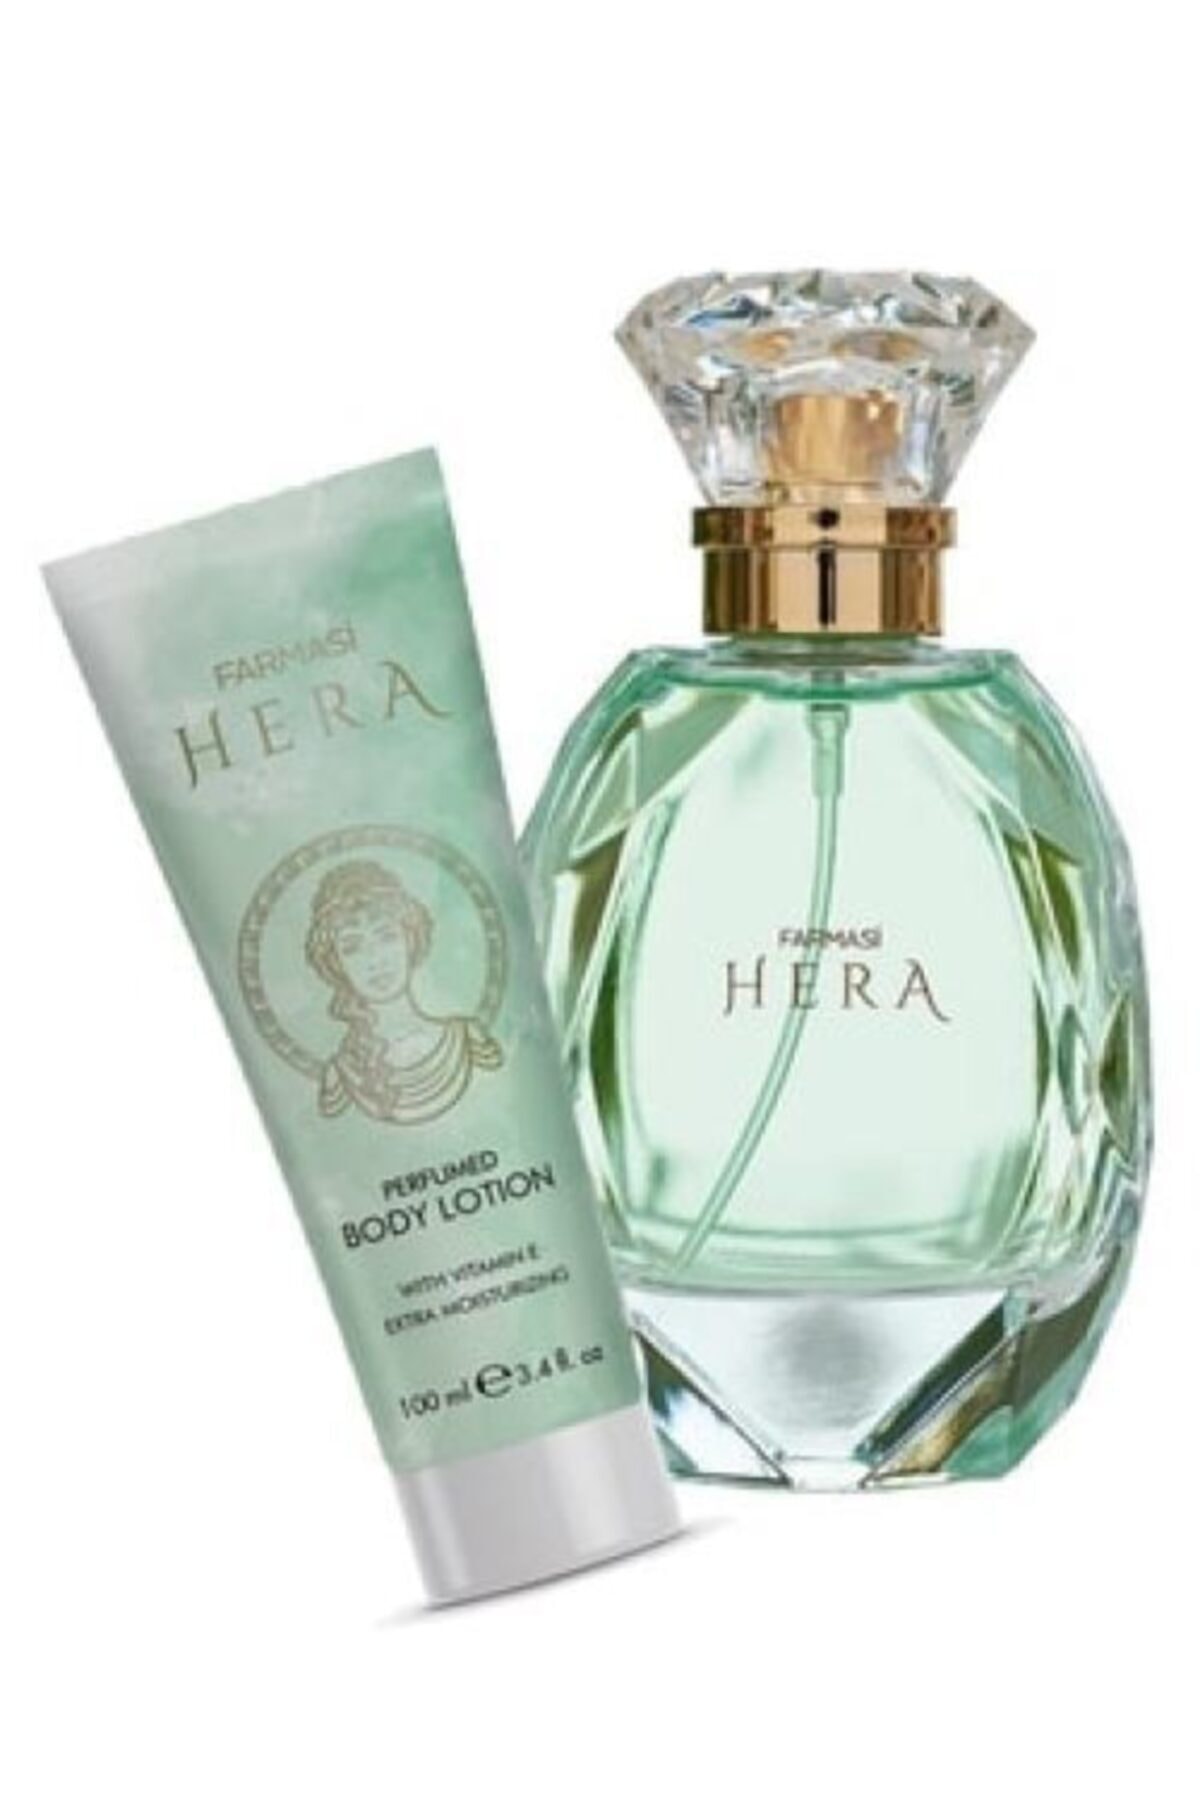 Farmasi Hera Edp 65 ml Kadın Parfümü +Hera Parfümlü Vücut Losyonu 100 ml 2'li Set FARMASİİ55